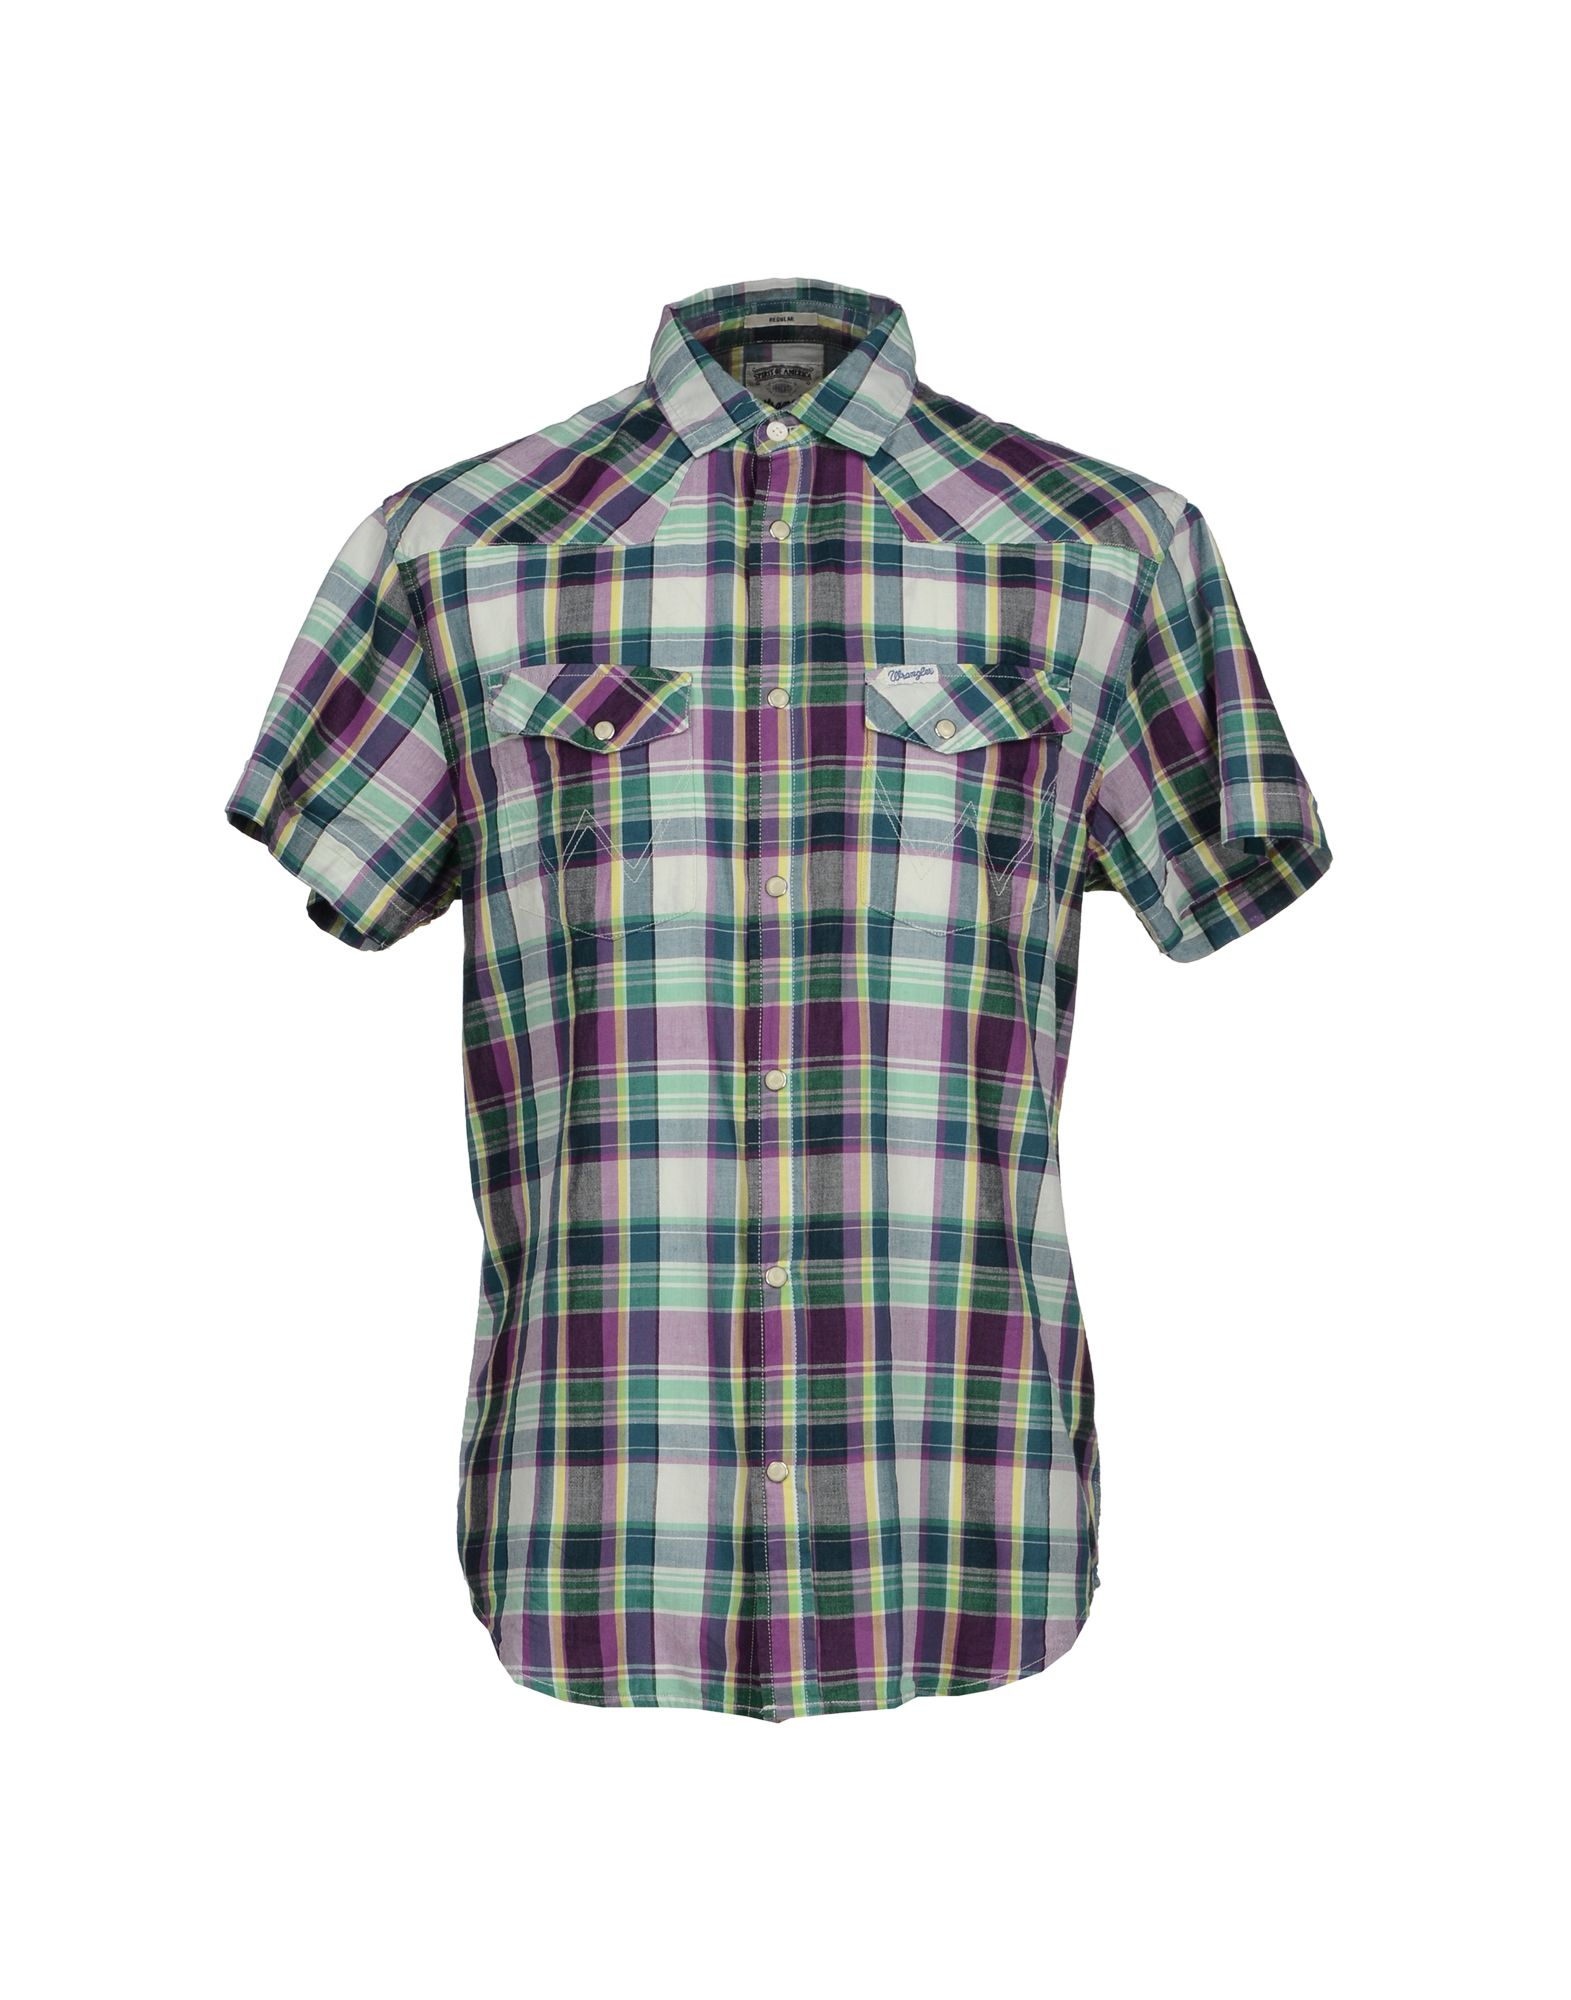 Lyst - Wrangler Shirt in Purple for Men